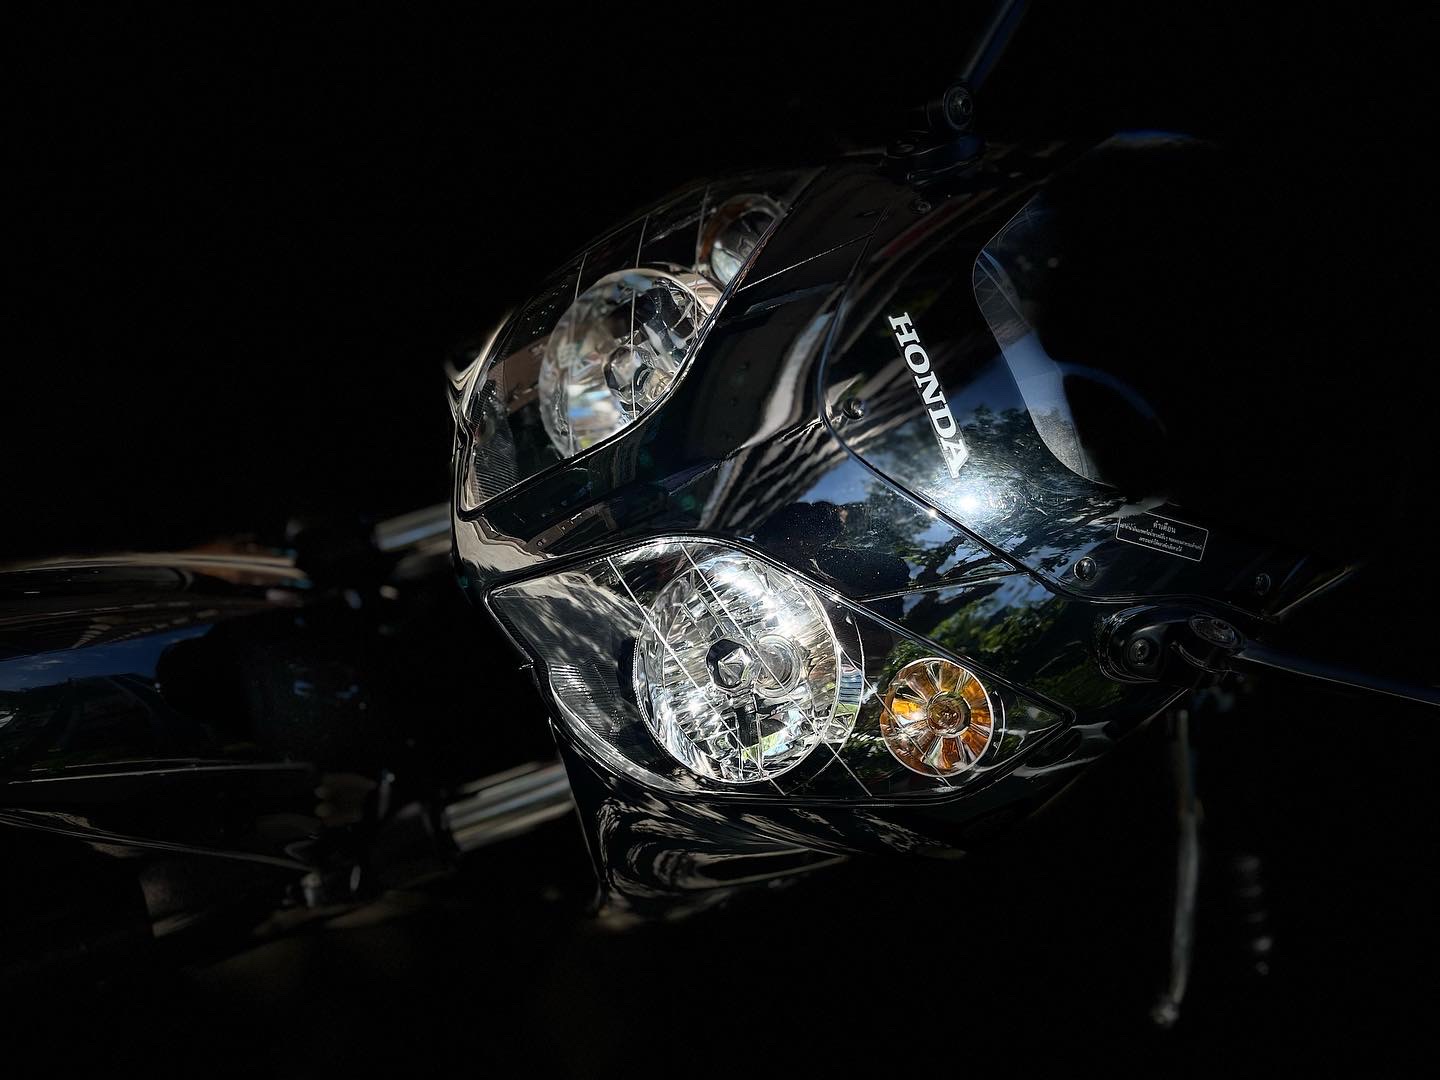 【小資族二手重機買賣】HONDA CBR150R - 「Webike-摩托車市」 全指針儀錶 經典換舊 小資族二手重機買賣